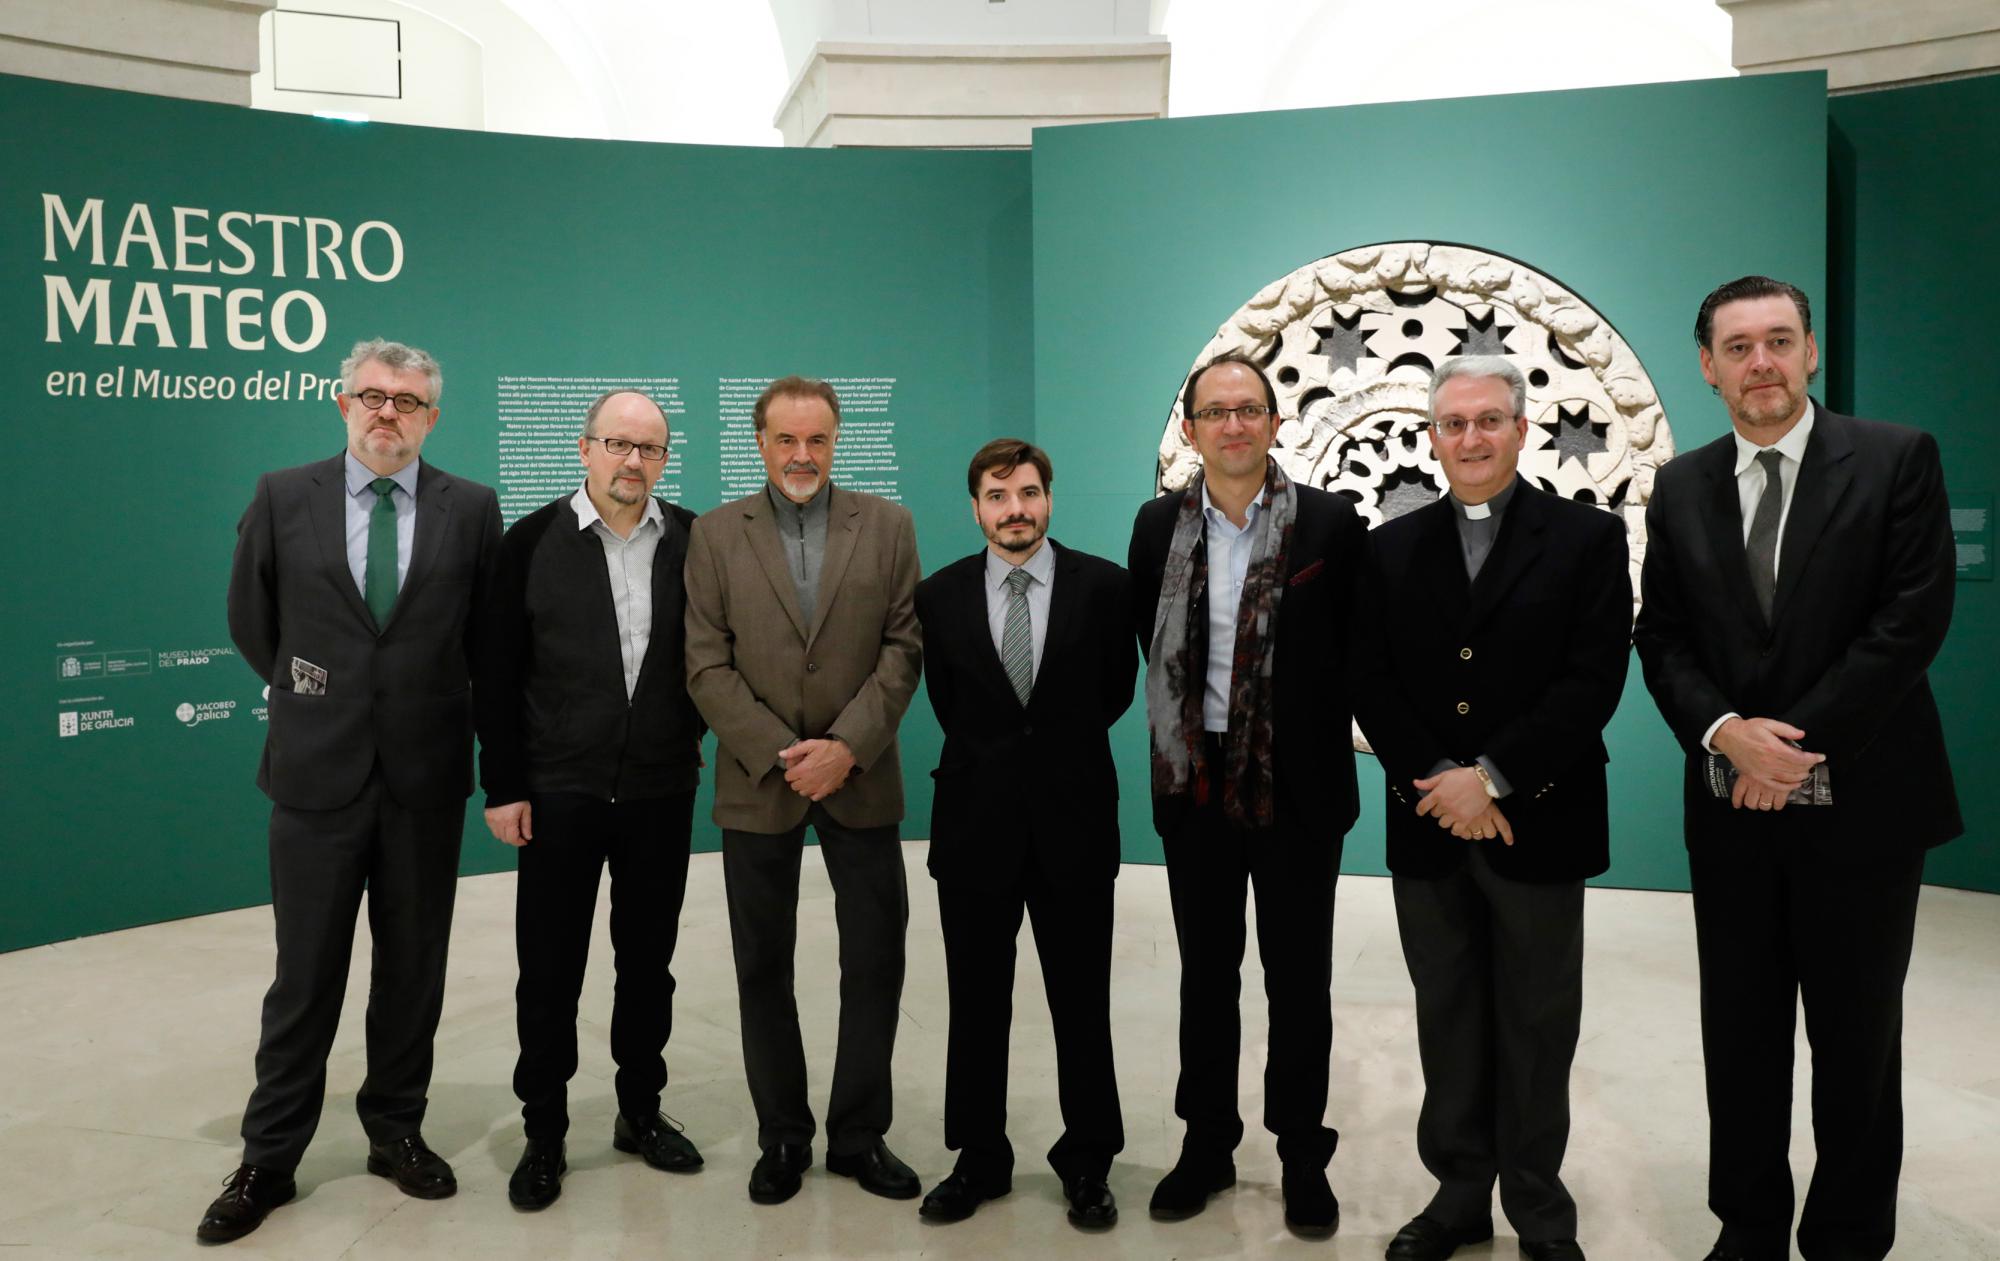 Exposición: "Maestro Mateo”, en el Museo del Prado, en las salas 51 y 51 B del edificio Villanueva